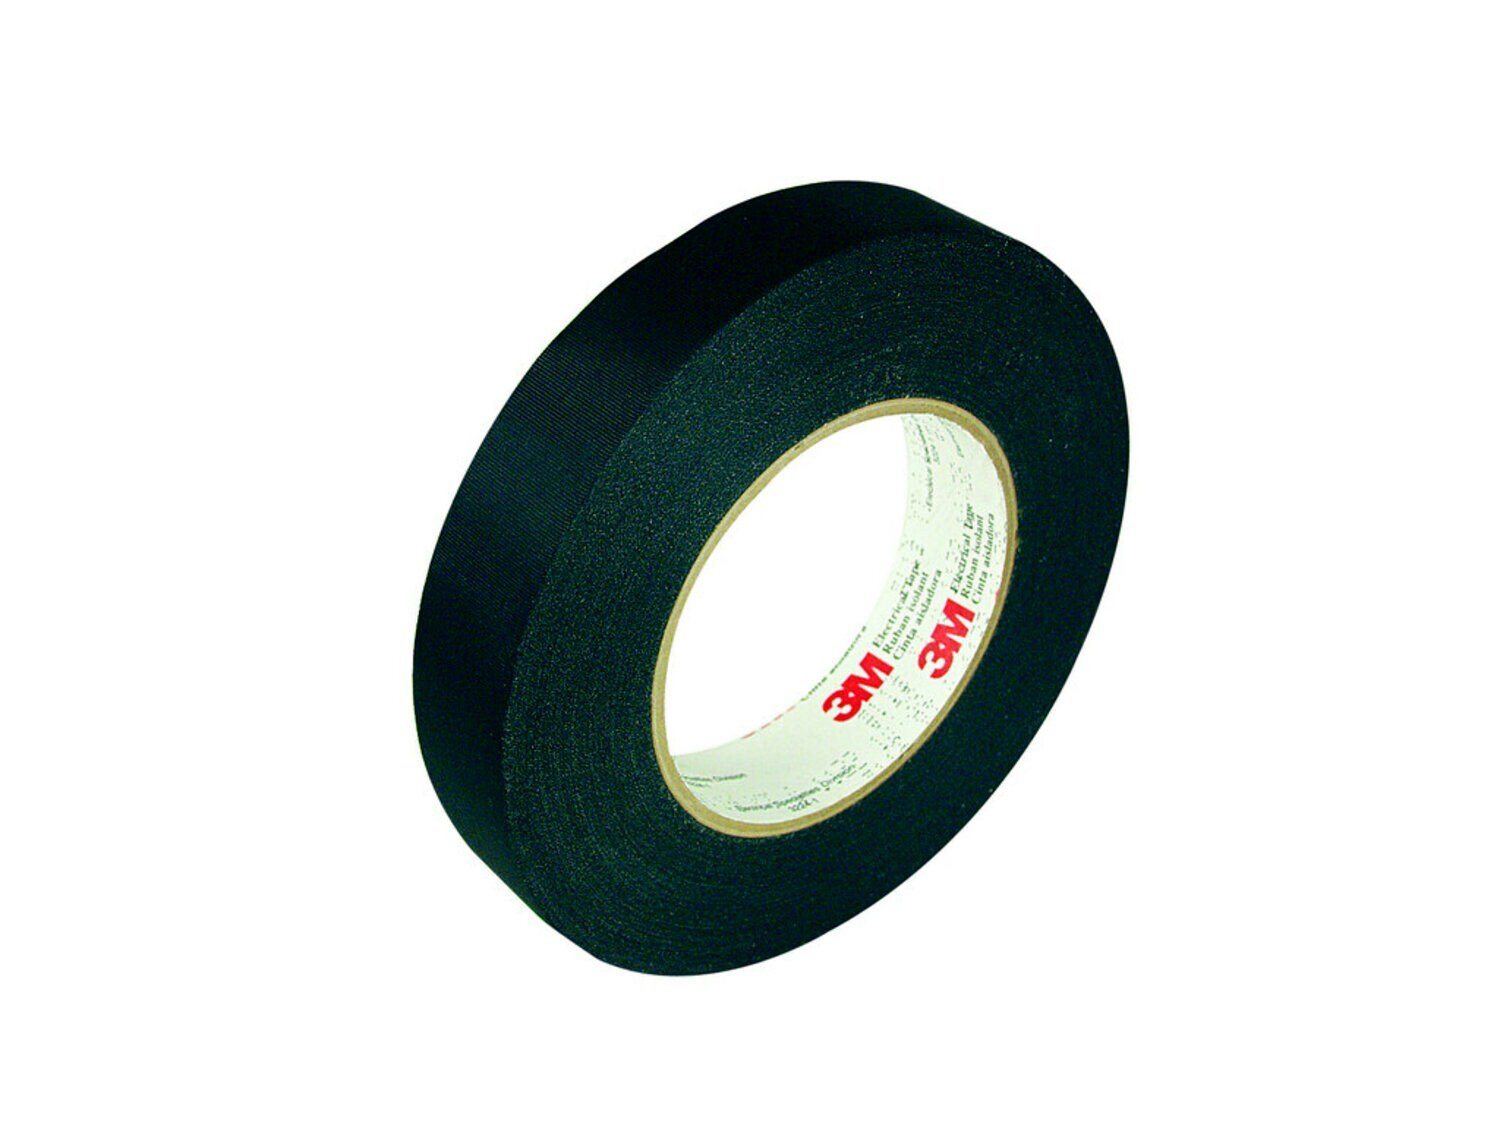 7010396987 - 3M Acetate Cloth Electrical Tape 11, 1/2 in x 72 yd, 3 in Paper Core,
Black, 72 Rolls/Case